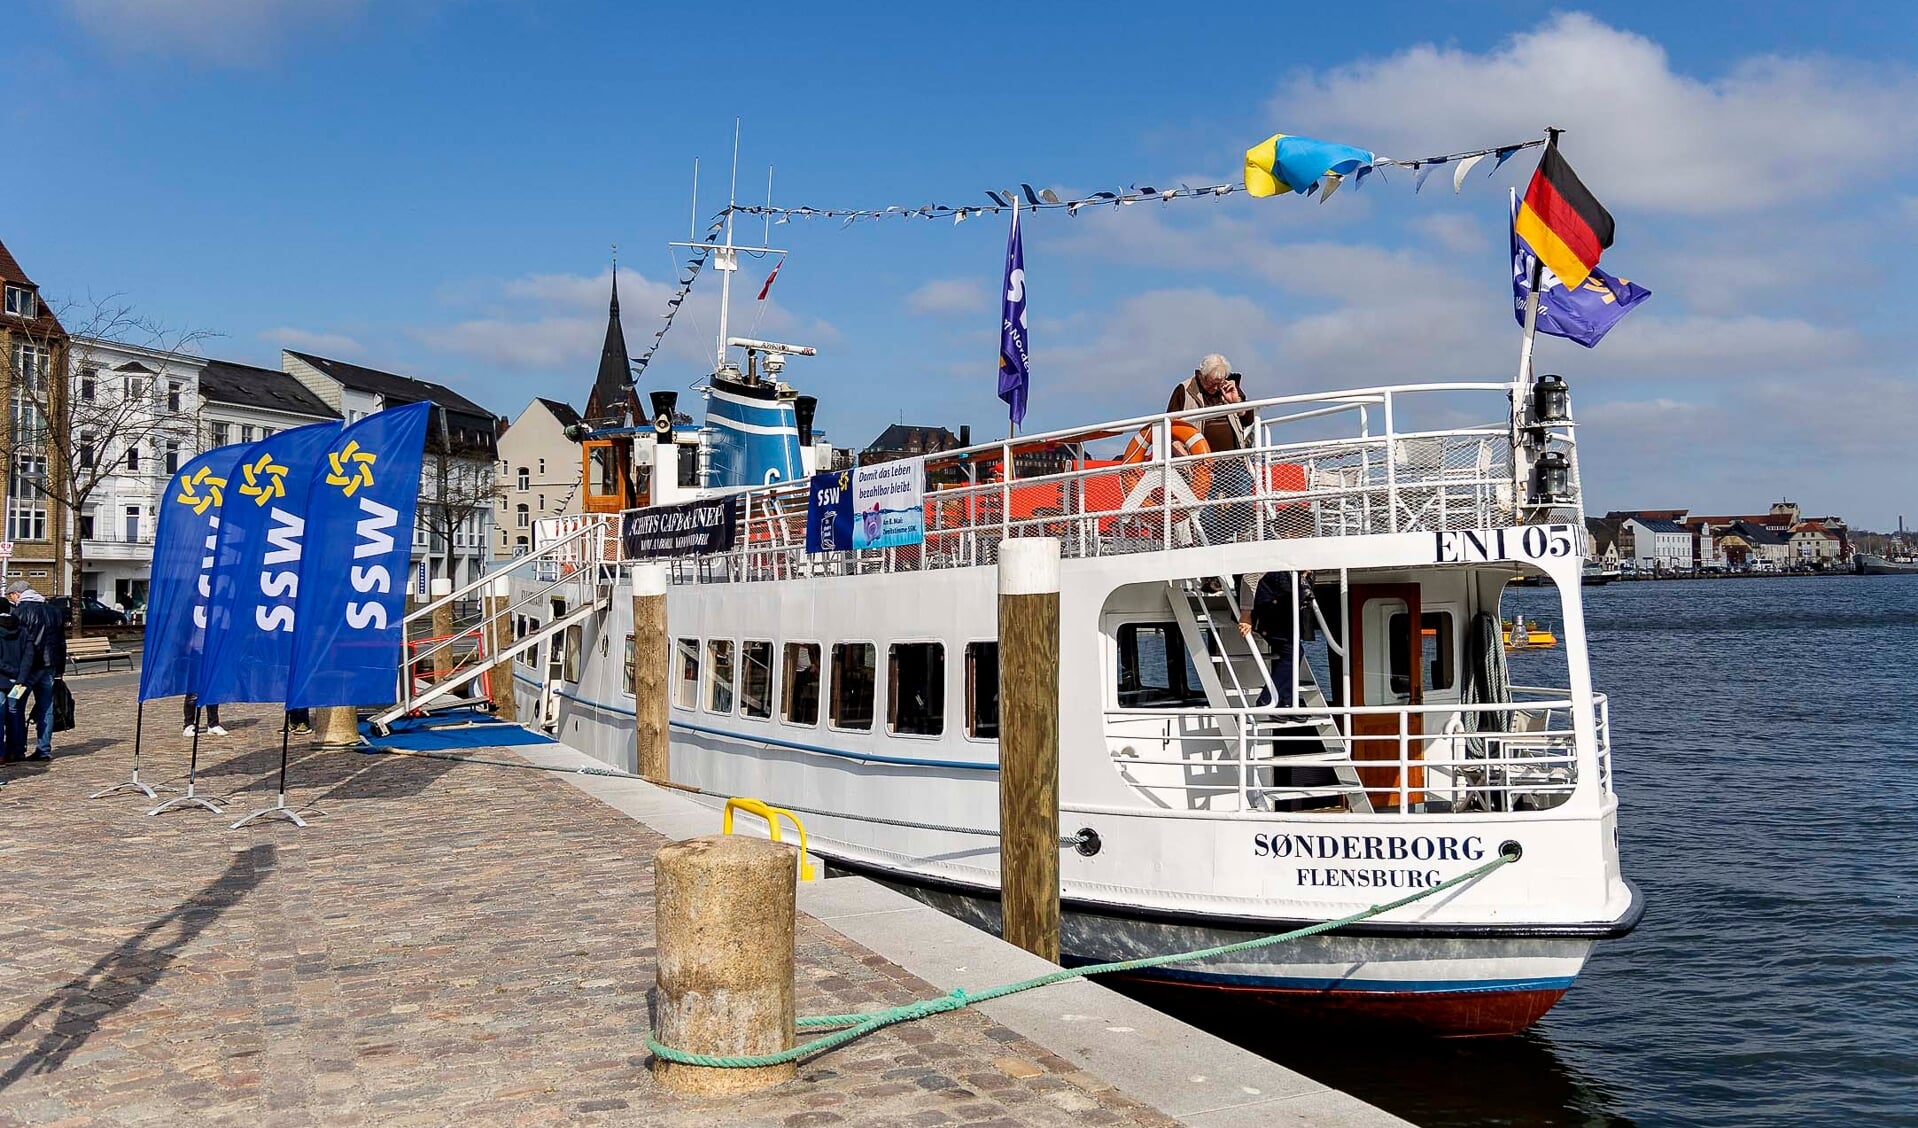 Lørdag formiddag havde SSW rykket sin valgkamp til søs og inviteret på bådtur for at gøre opmærksom på de problemer, Flensborg Fjord kæmper med.